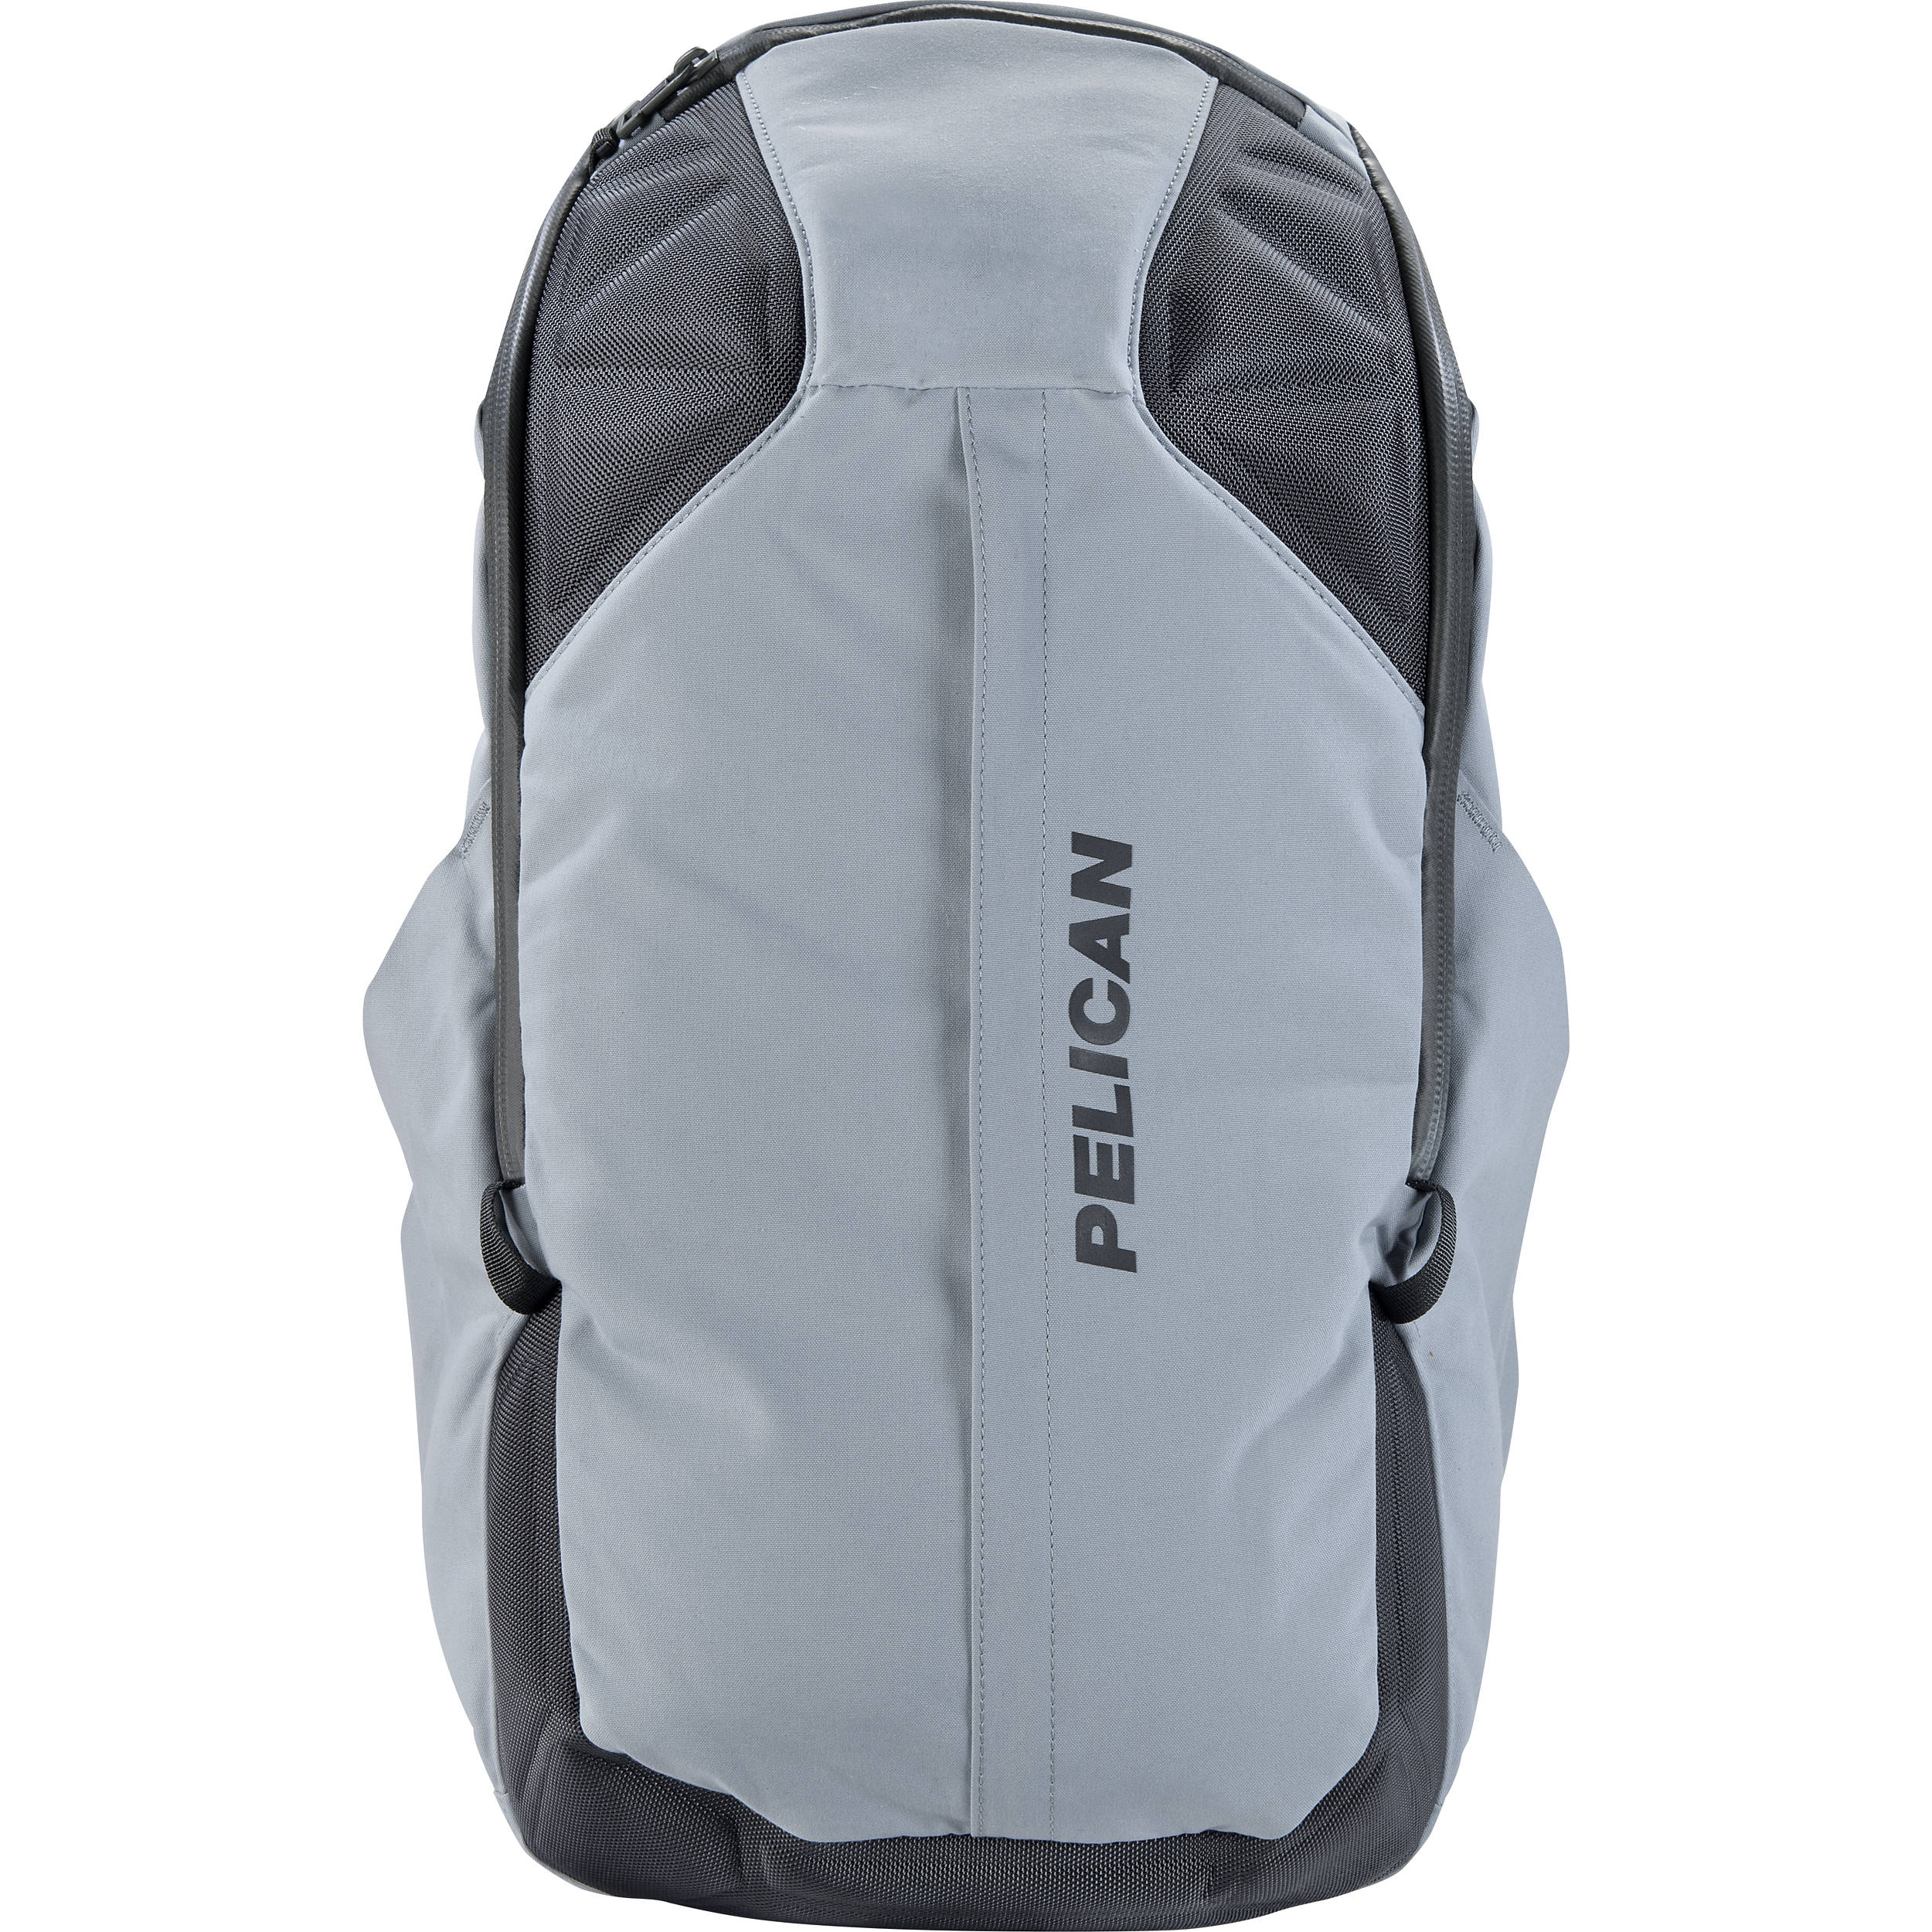 Pelican MPB35 Backpack (35L, Gray)